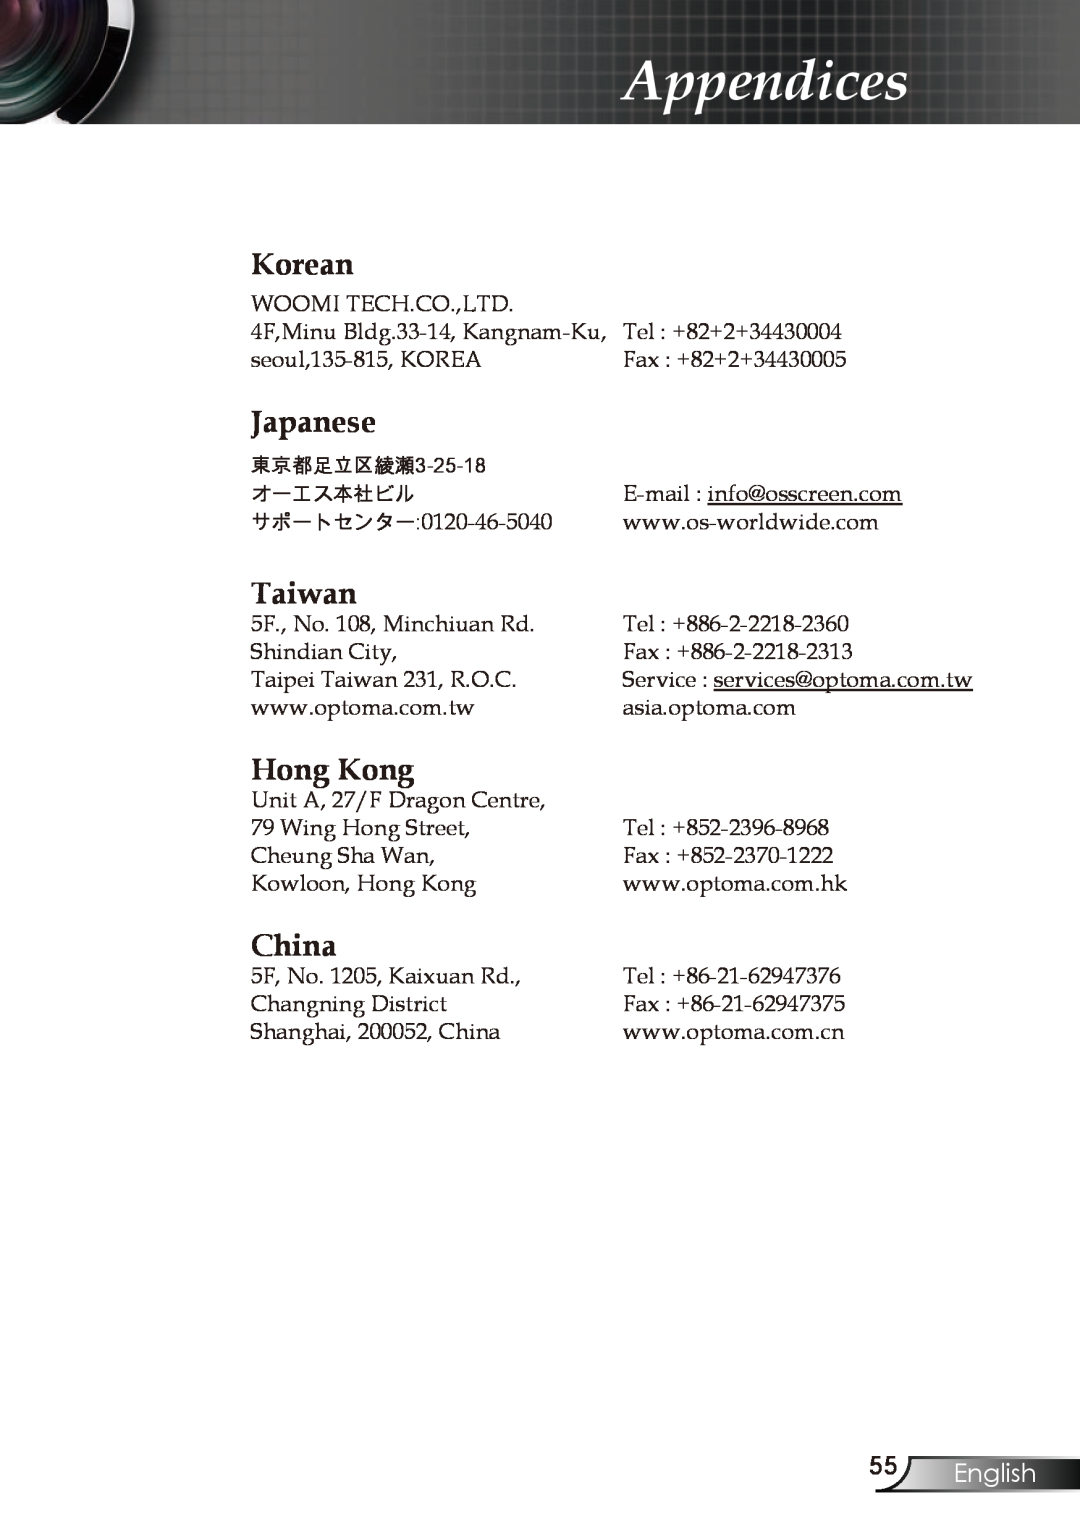 Optoma Technology EP721, EP728, EP727, EP723 manual Korean, Japanese, Taiwan, Hong Kong, China, English, Appendices 